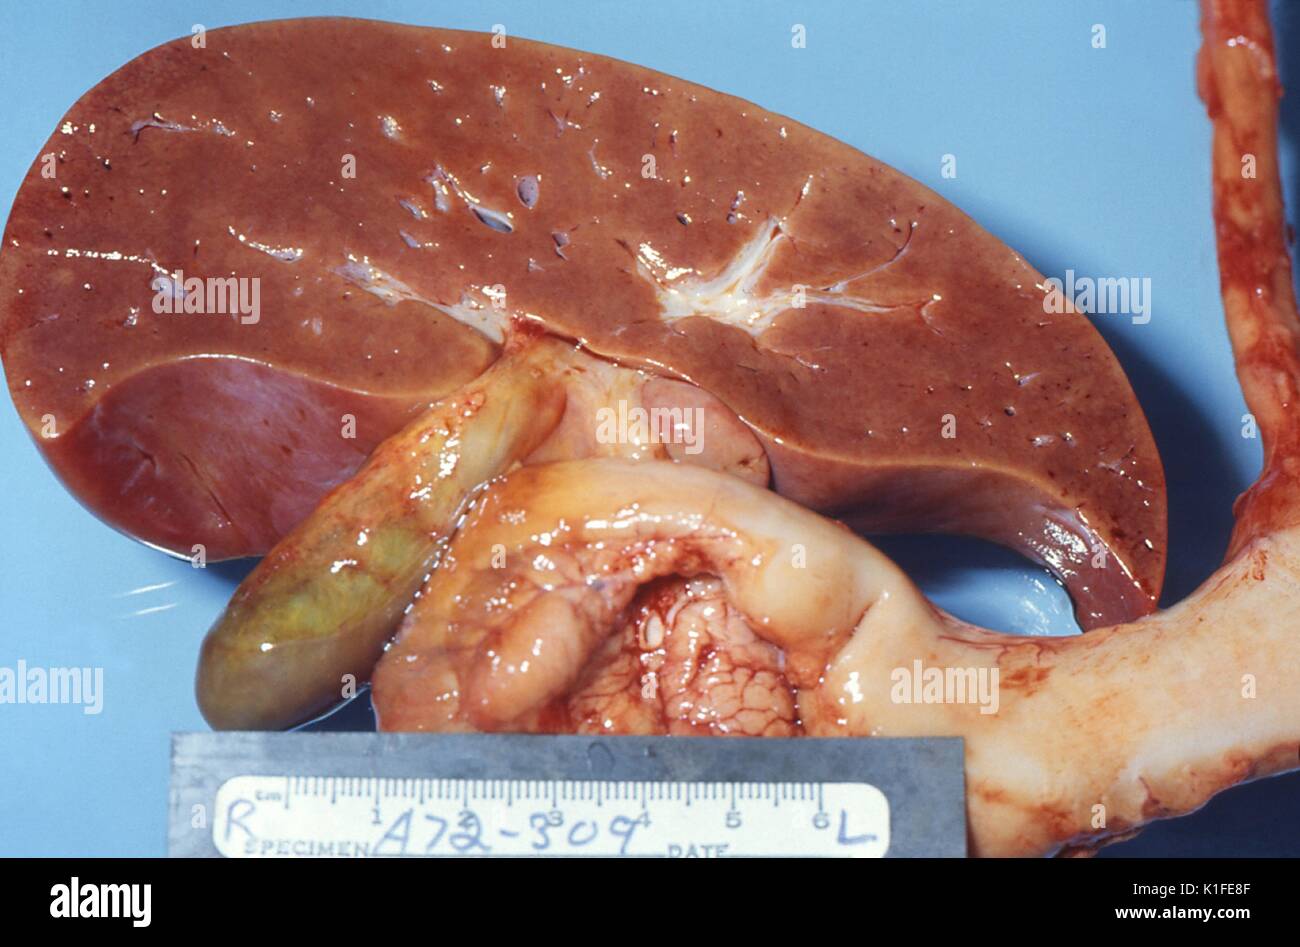 Grobe Pathologie der Leber im tödlichen das Reye-syndrom, der Schnitt Oberfläche dieser groben Autopsie Muster eine Leber von einem Kind, der das Reye-syndrom starb, zeigt eine leichte Blässe, die durch fette Ansammlung in den Leberzellen war, wissen auch als histiocytes. Bild mit freundlicher Genehmigung von CDC/Dr. Edwin S. Ewing, Jr., 1972. Stockfoto